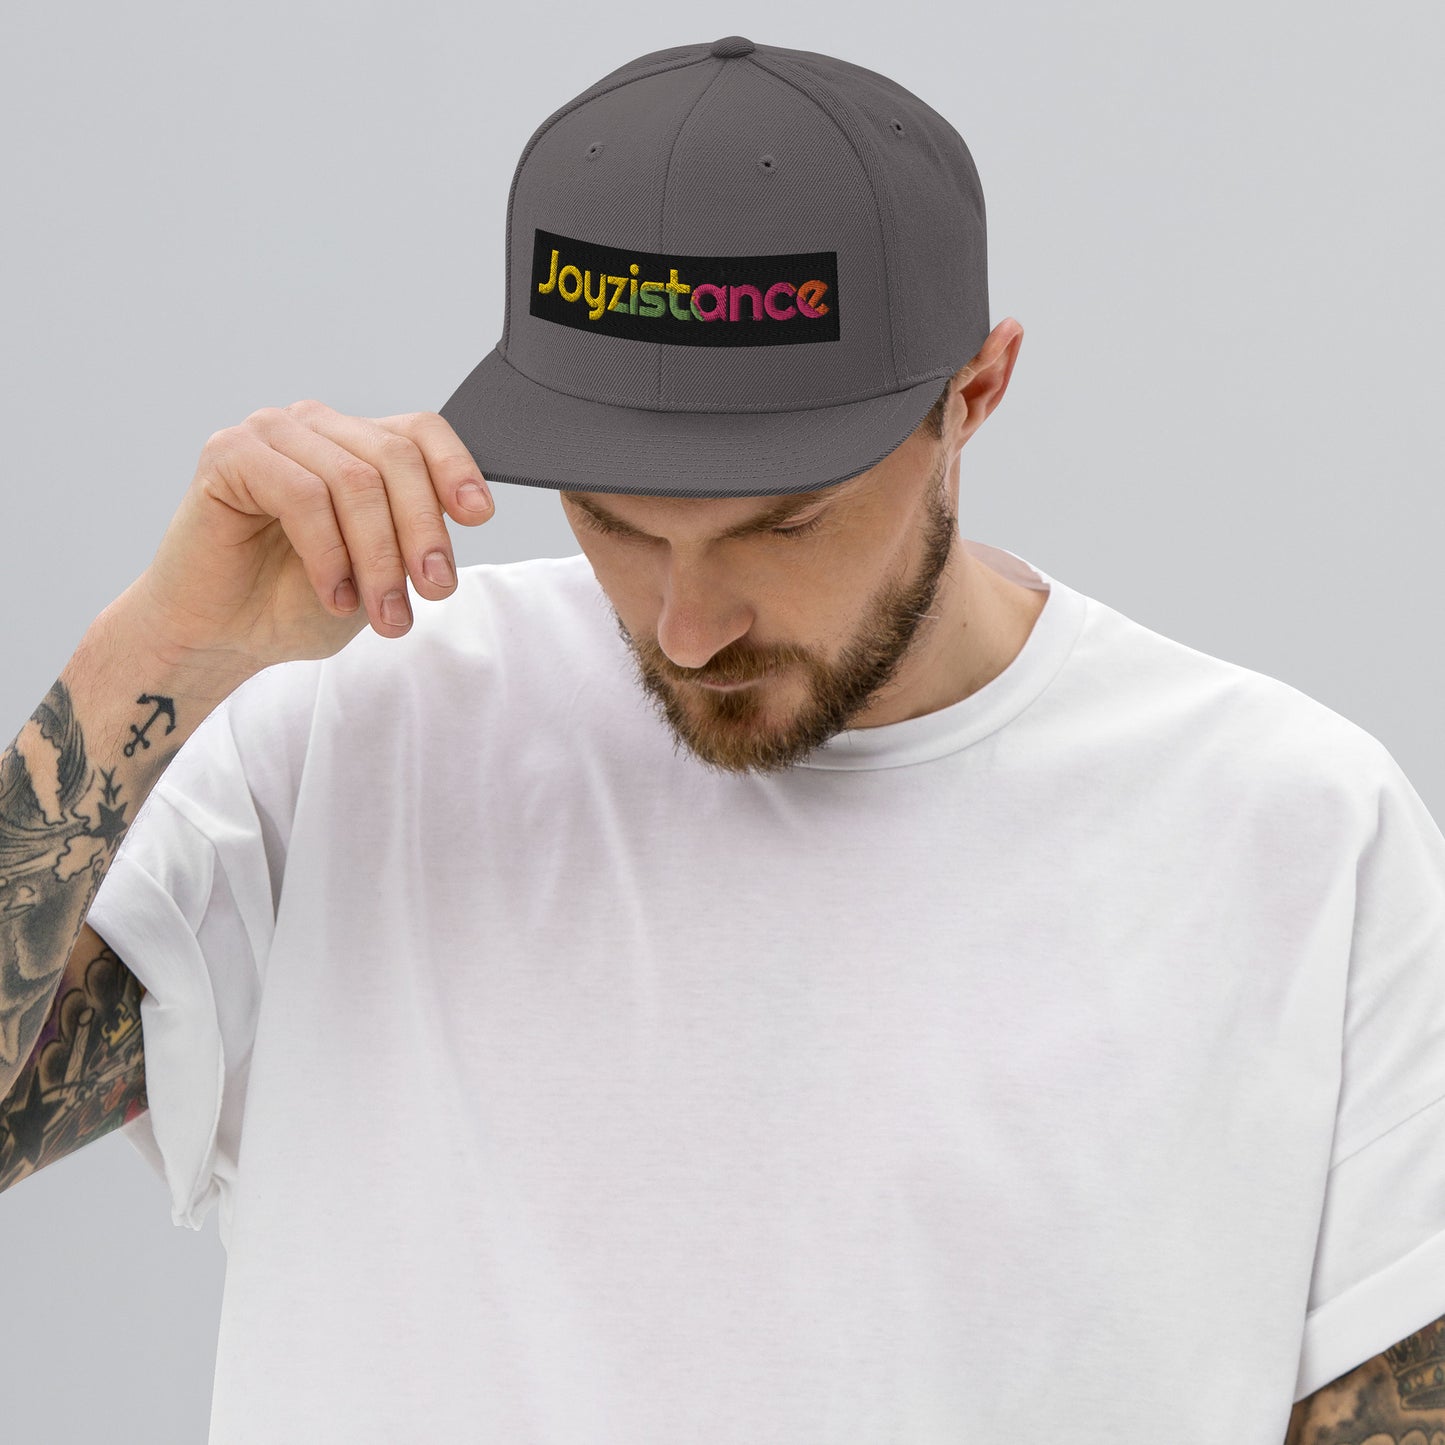 "Joyzistance" Snapback Hat